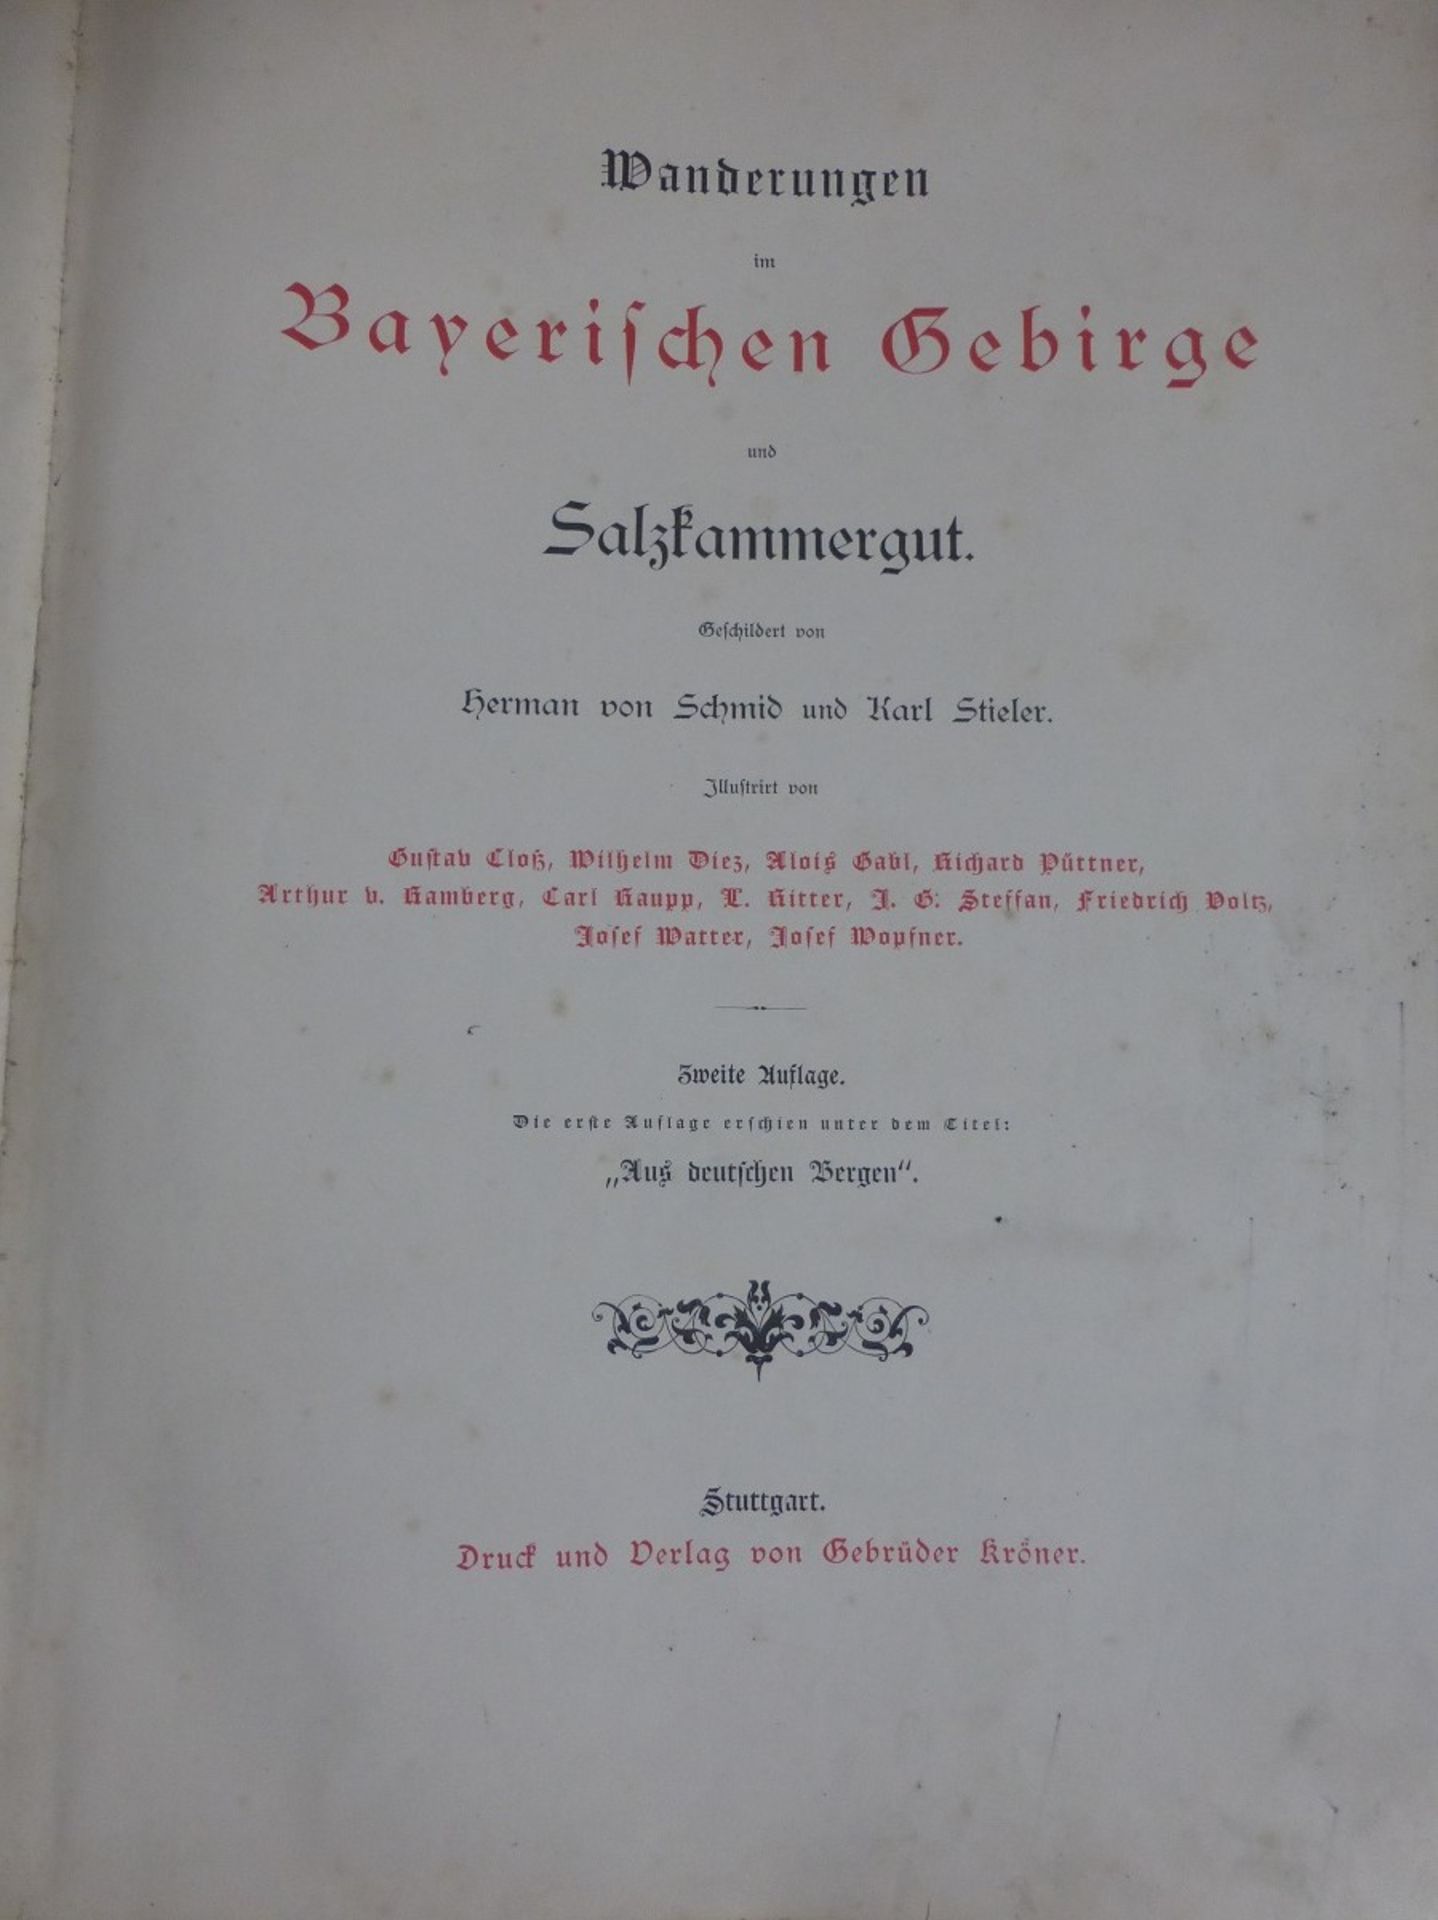 Wanderungen im Bayerischen Gebirge und Salzkammergut, Hermann v. Schmied / Karl Stieler,